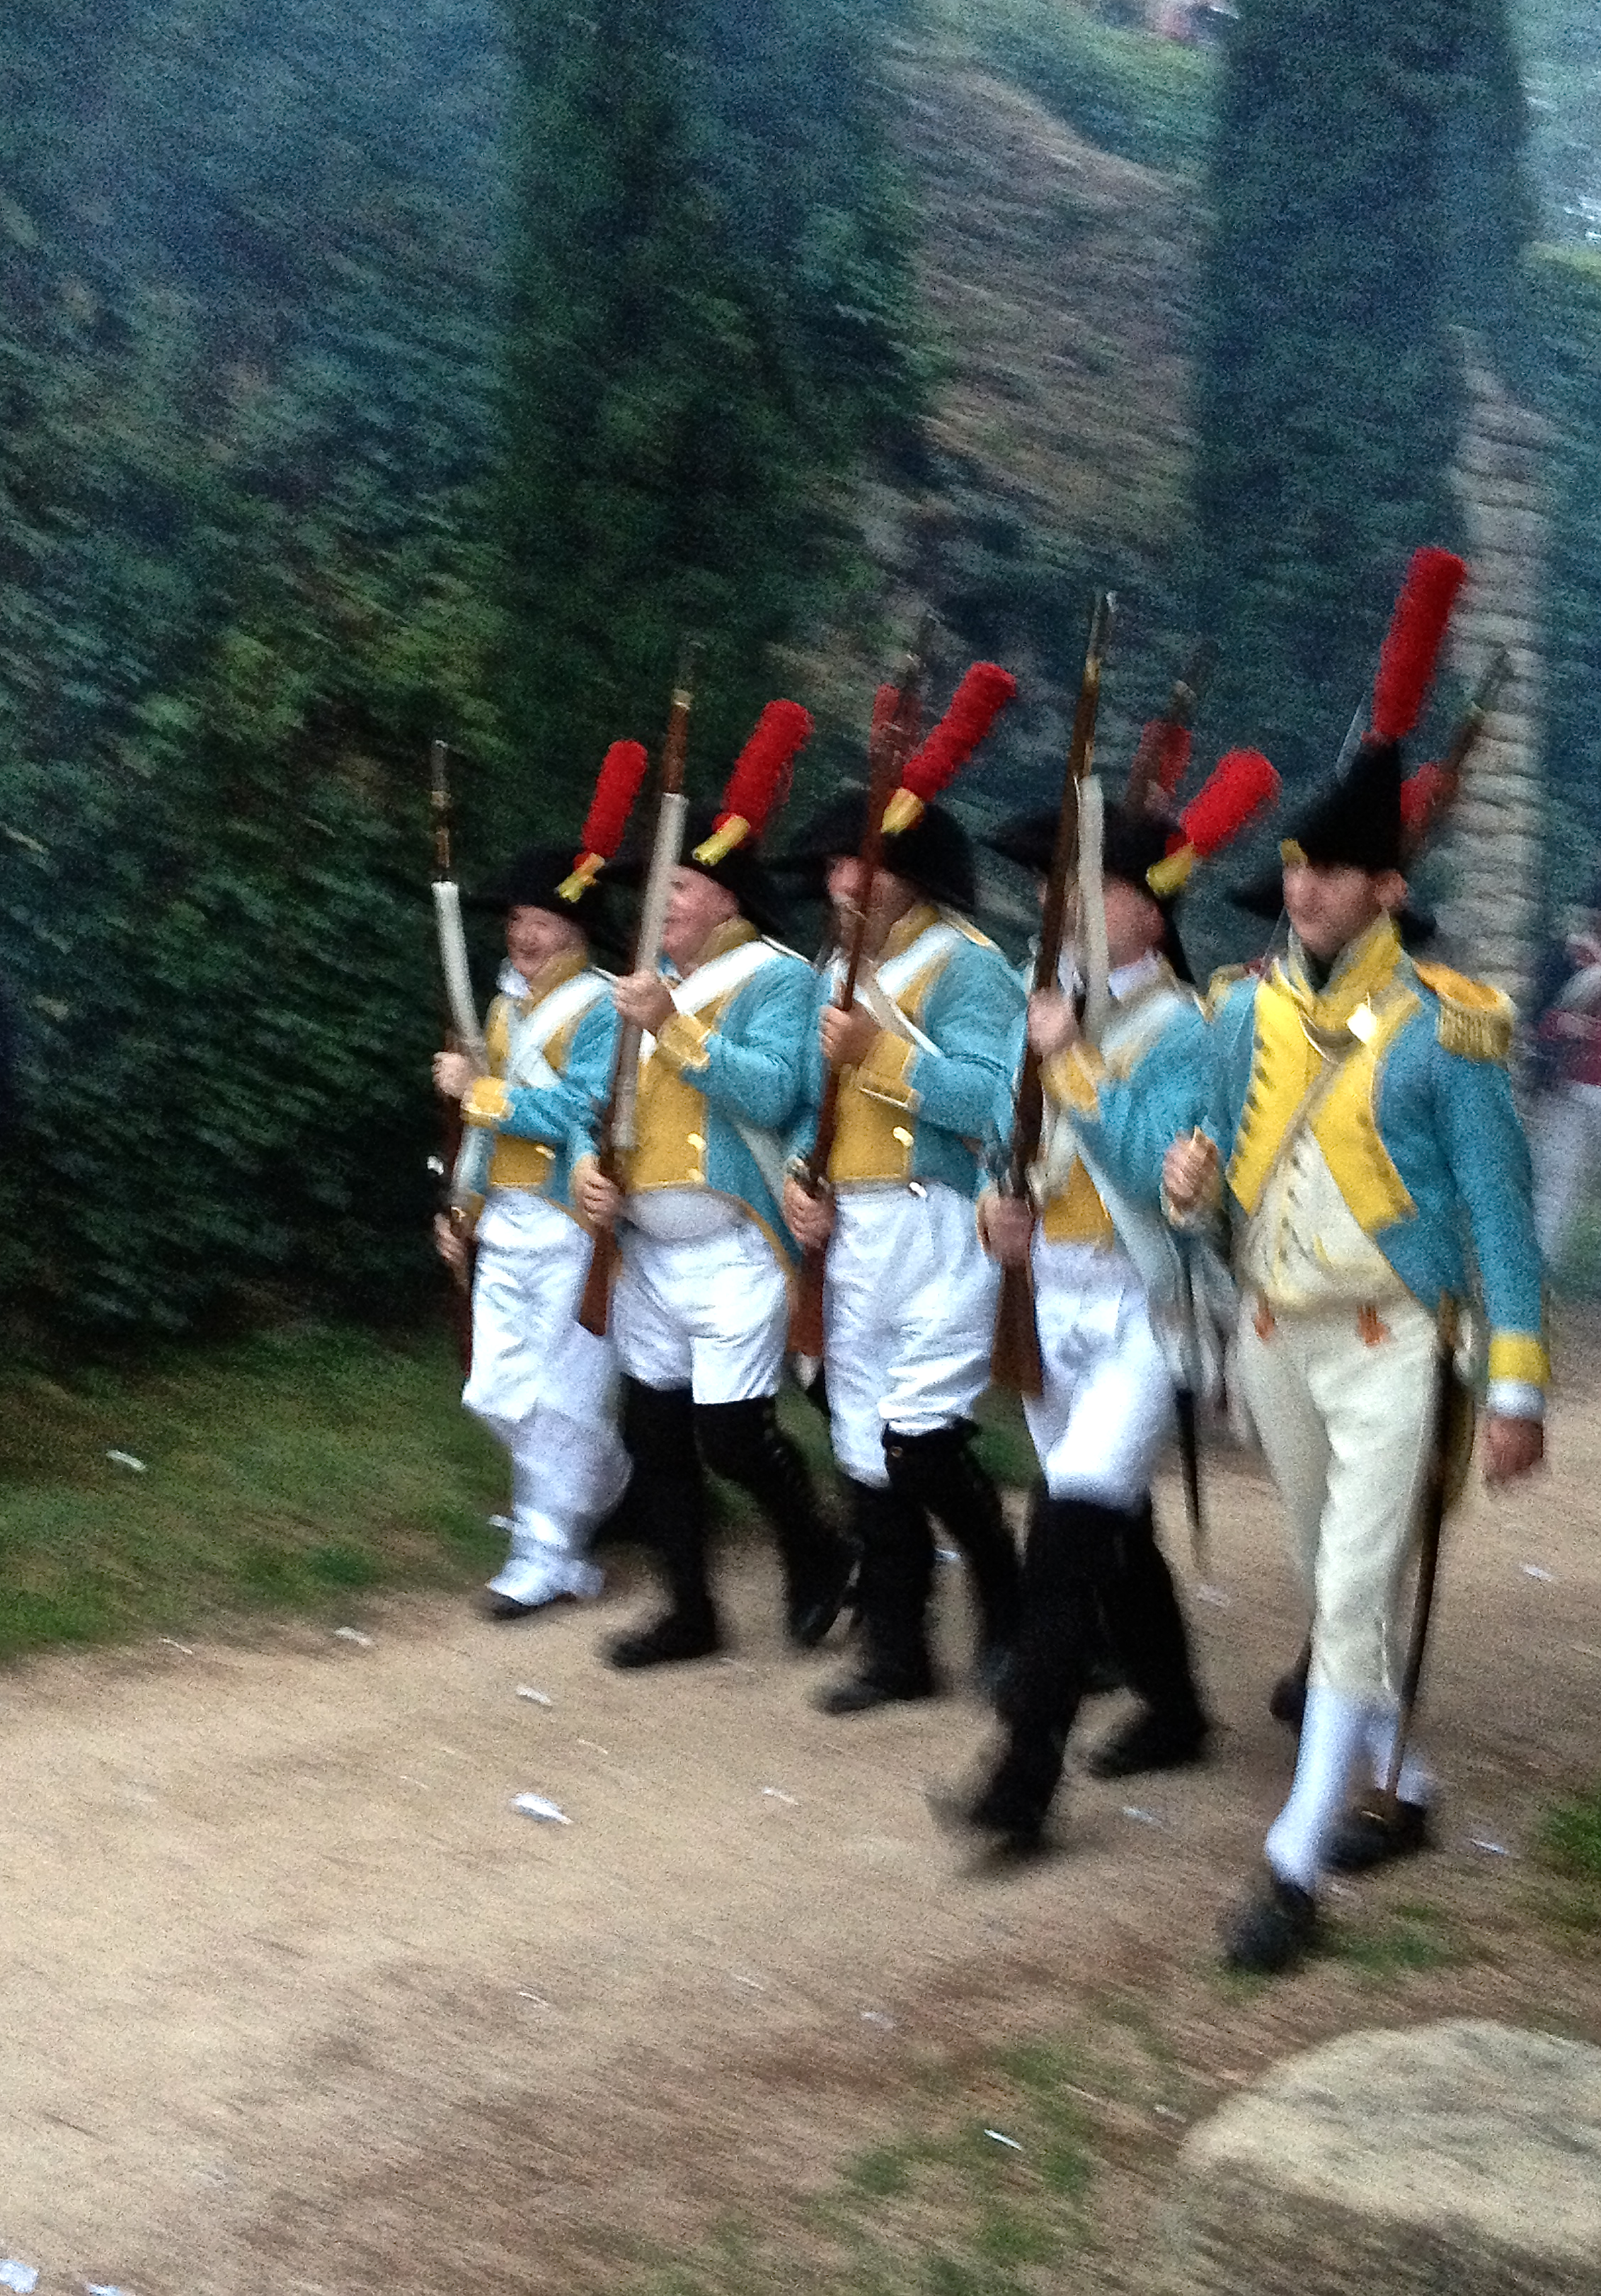 Men reenacting battle with Napoleon's troop in Girona, Spain